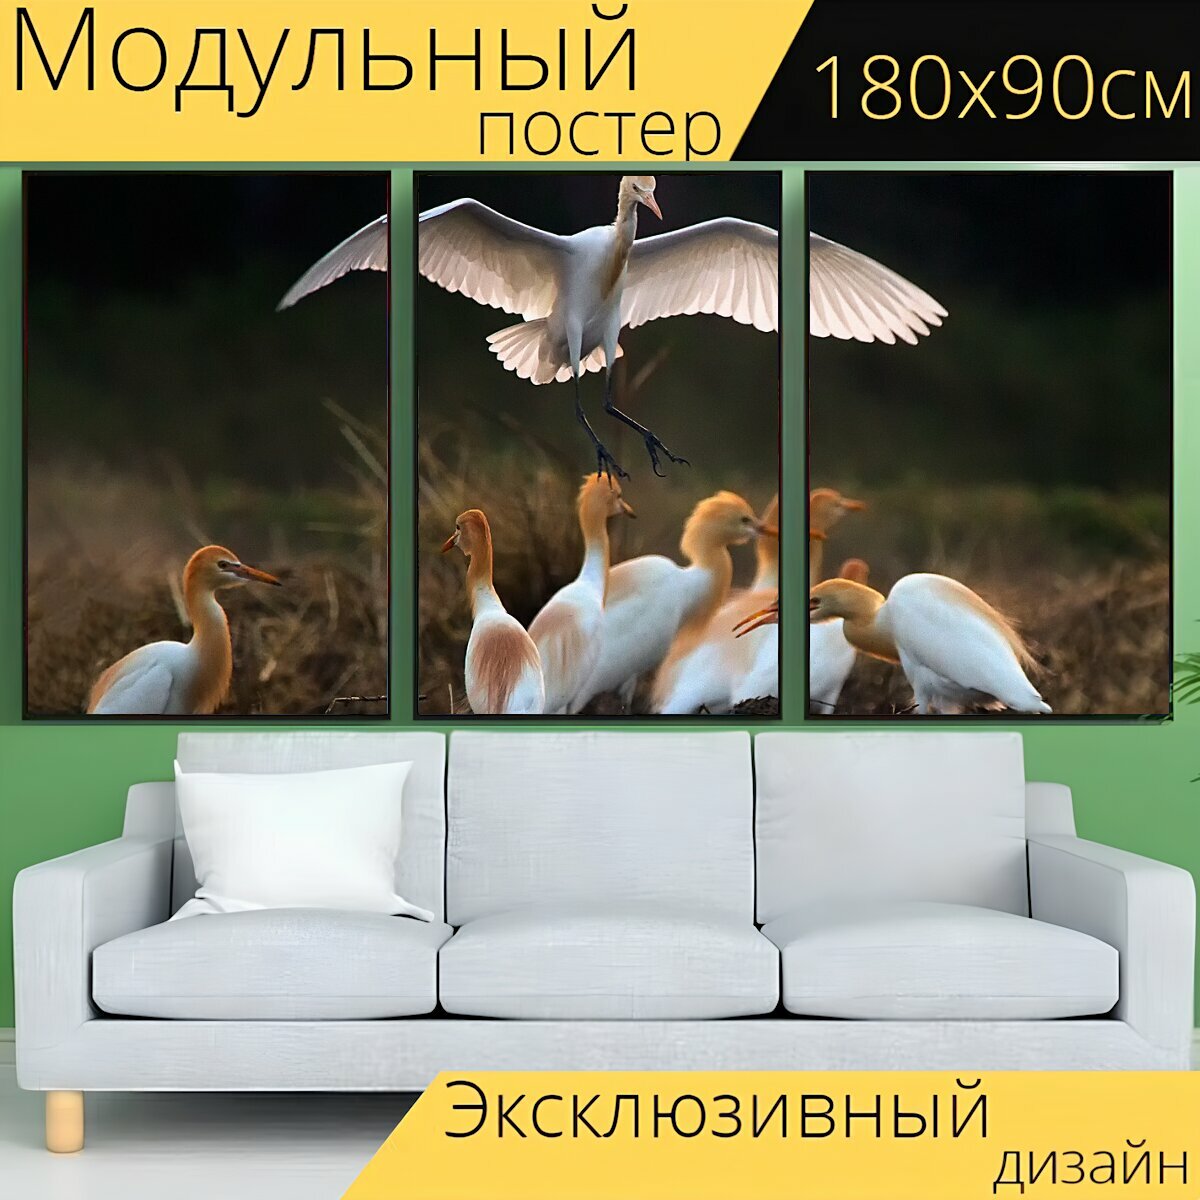 Модульный постер "Птица, клювая птица, полевка" 180 x 90 см. для интерьера